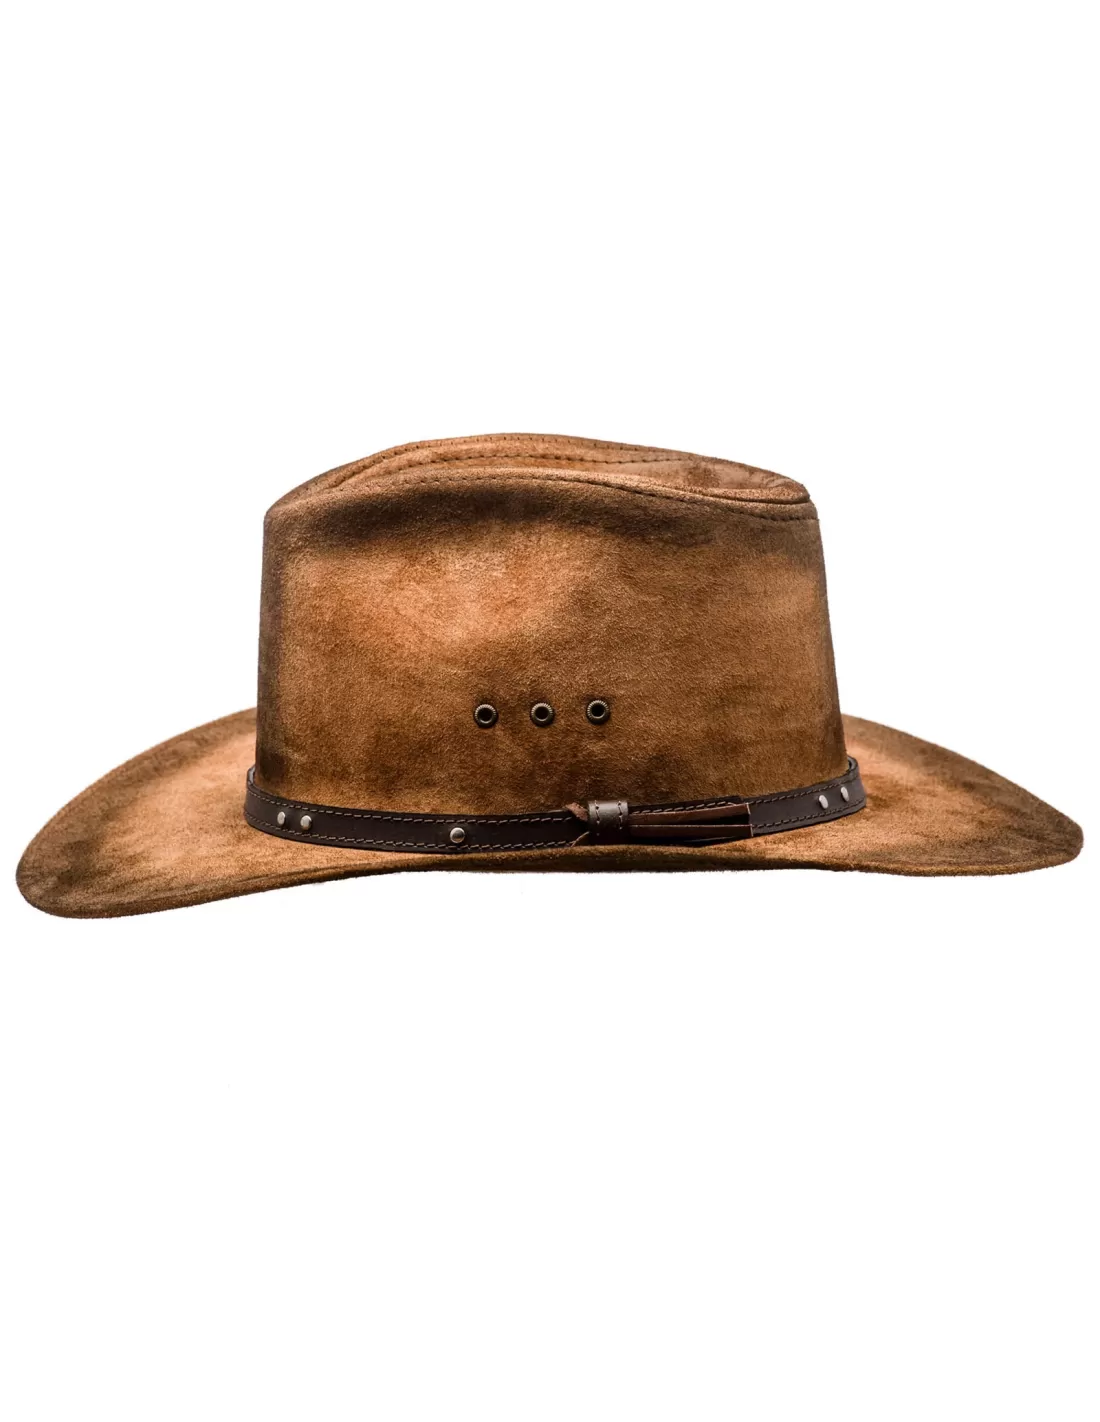 Rg512 GR Hommes Ouest Chapeau de Cowboy de Femmes avec Ceinture en Cuir Large Brim Hat Sombrero Hat Jazz. Color : Black, Taille : 56-58 